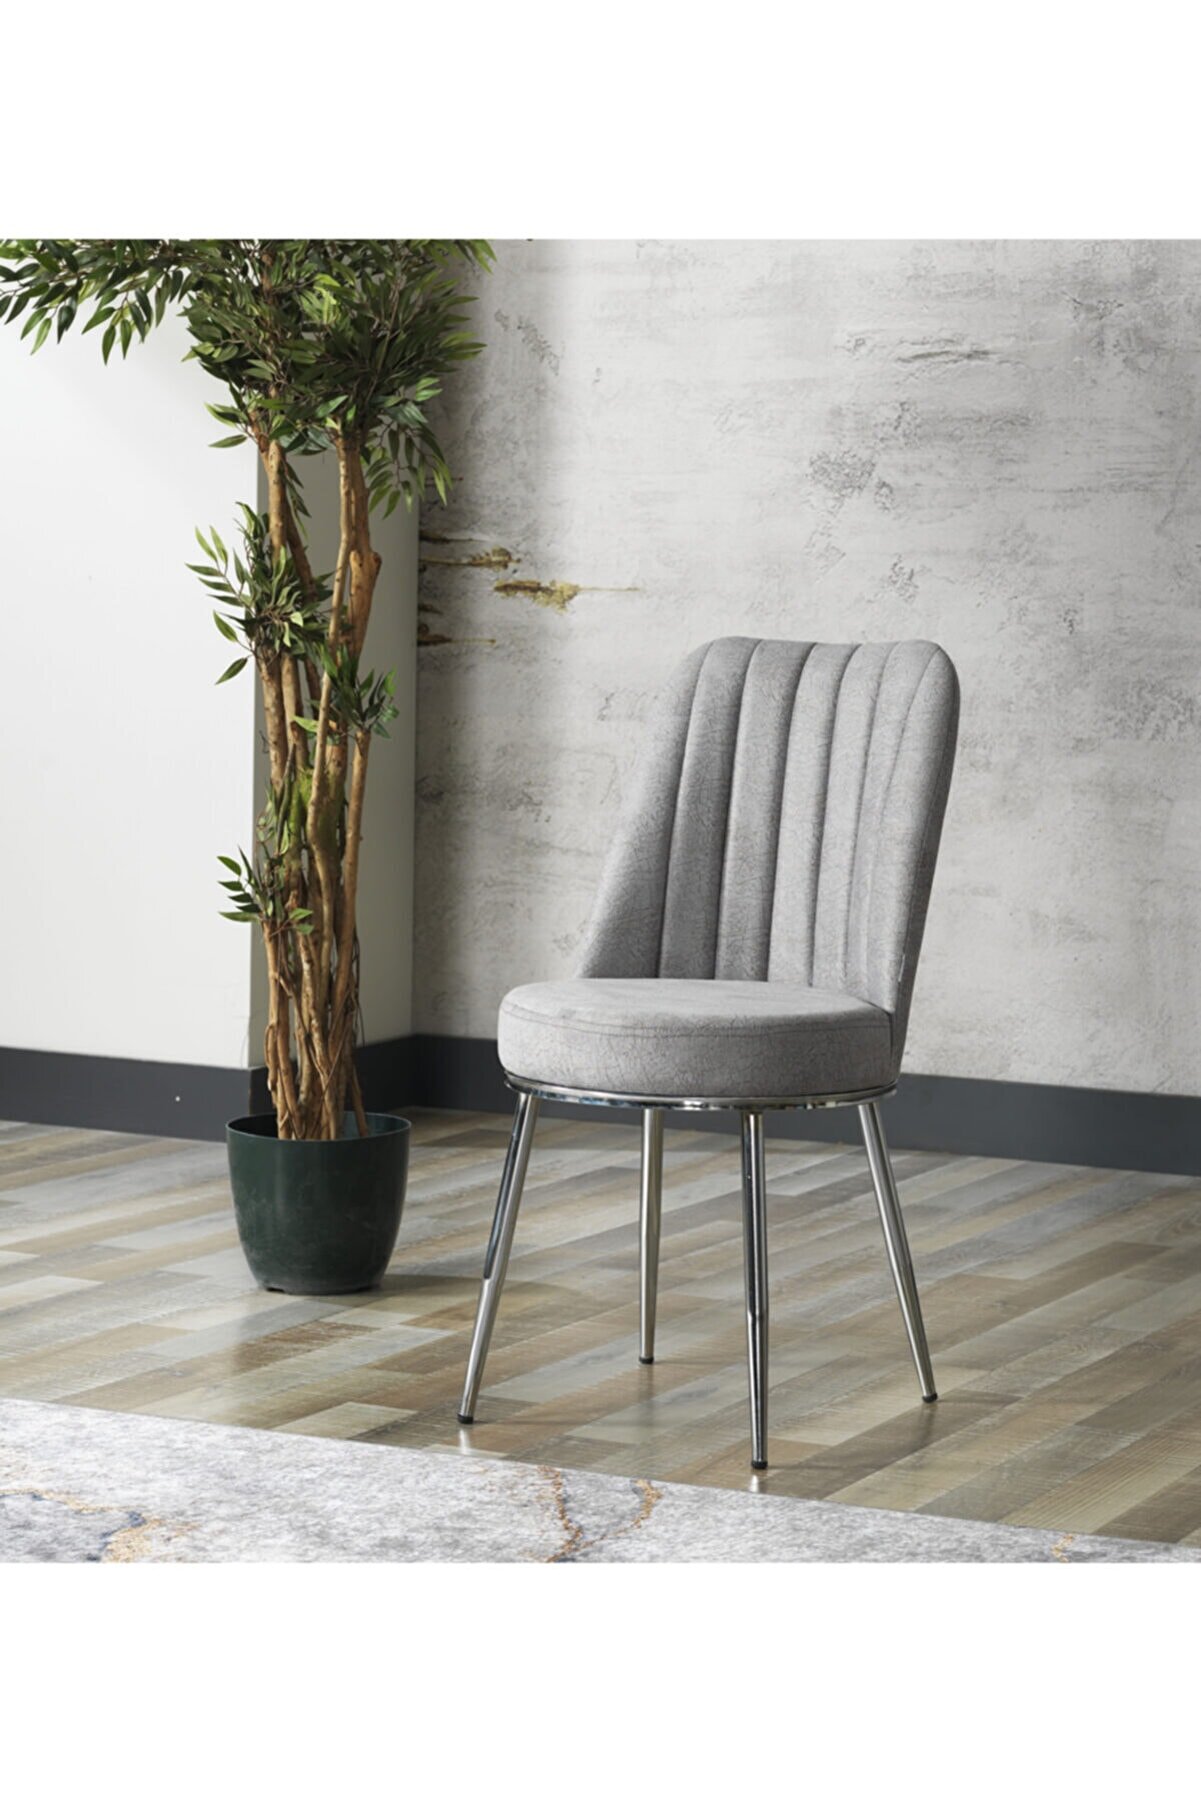 Avvio Gold Sandalye- Yemek Masası Sandalyesi - Mutfak Masası Sandalyesi Gri Renk- Metal Krom Ayak